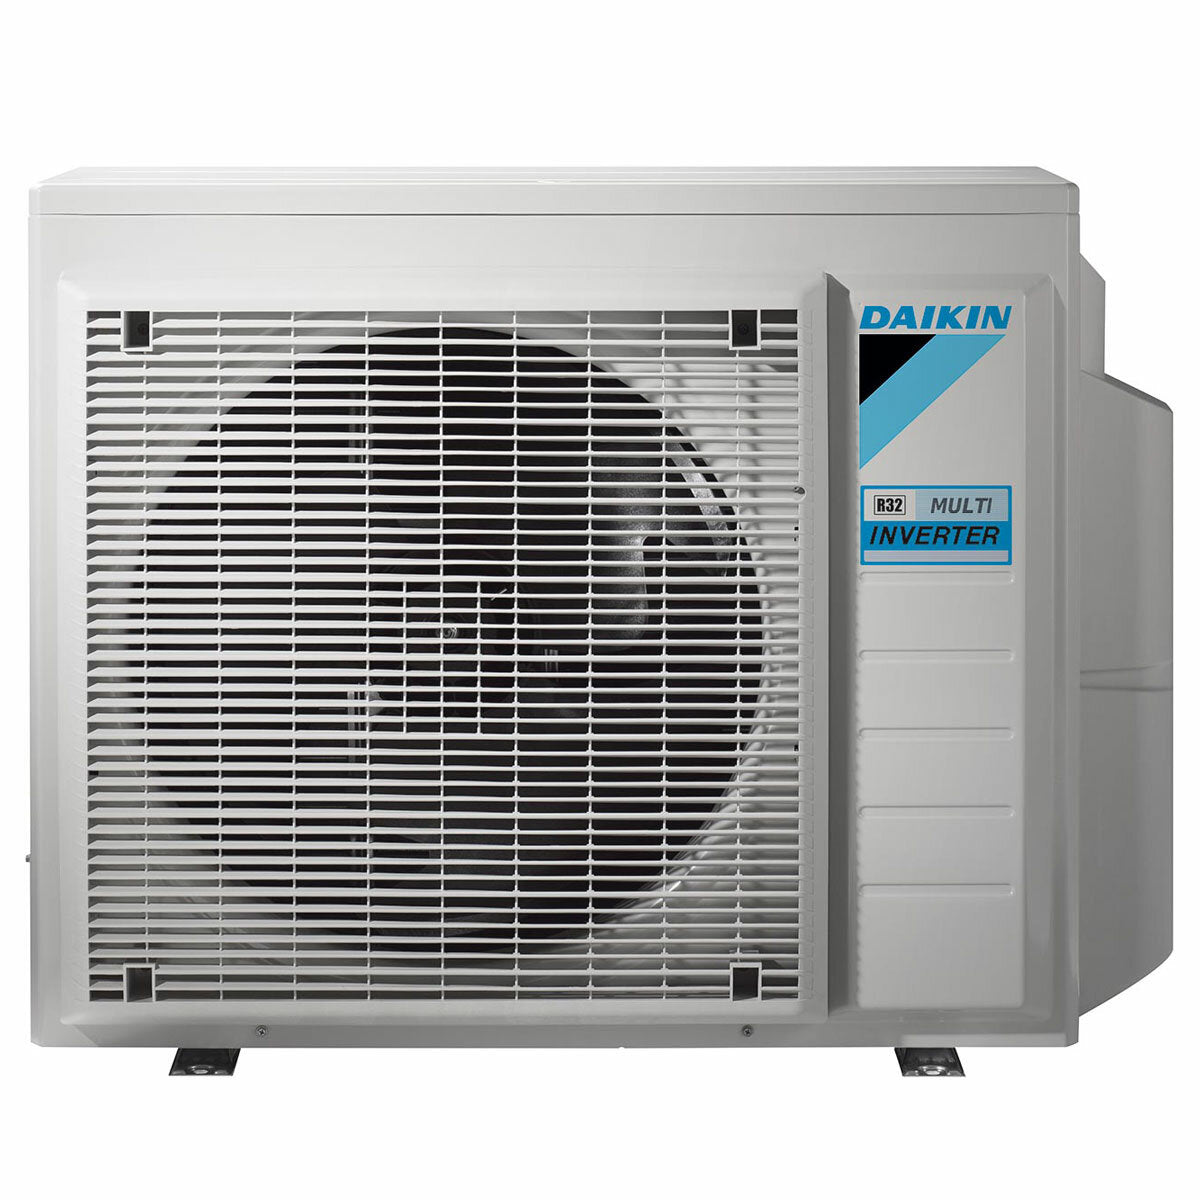 Daikin Emura Klimaanlage 3 Split Panels 9000+12000+12000+18000 BTU Wechselrichter A++ WLAN Außengerät 7,4 kW Silber